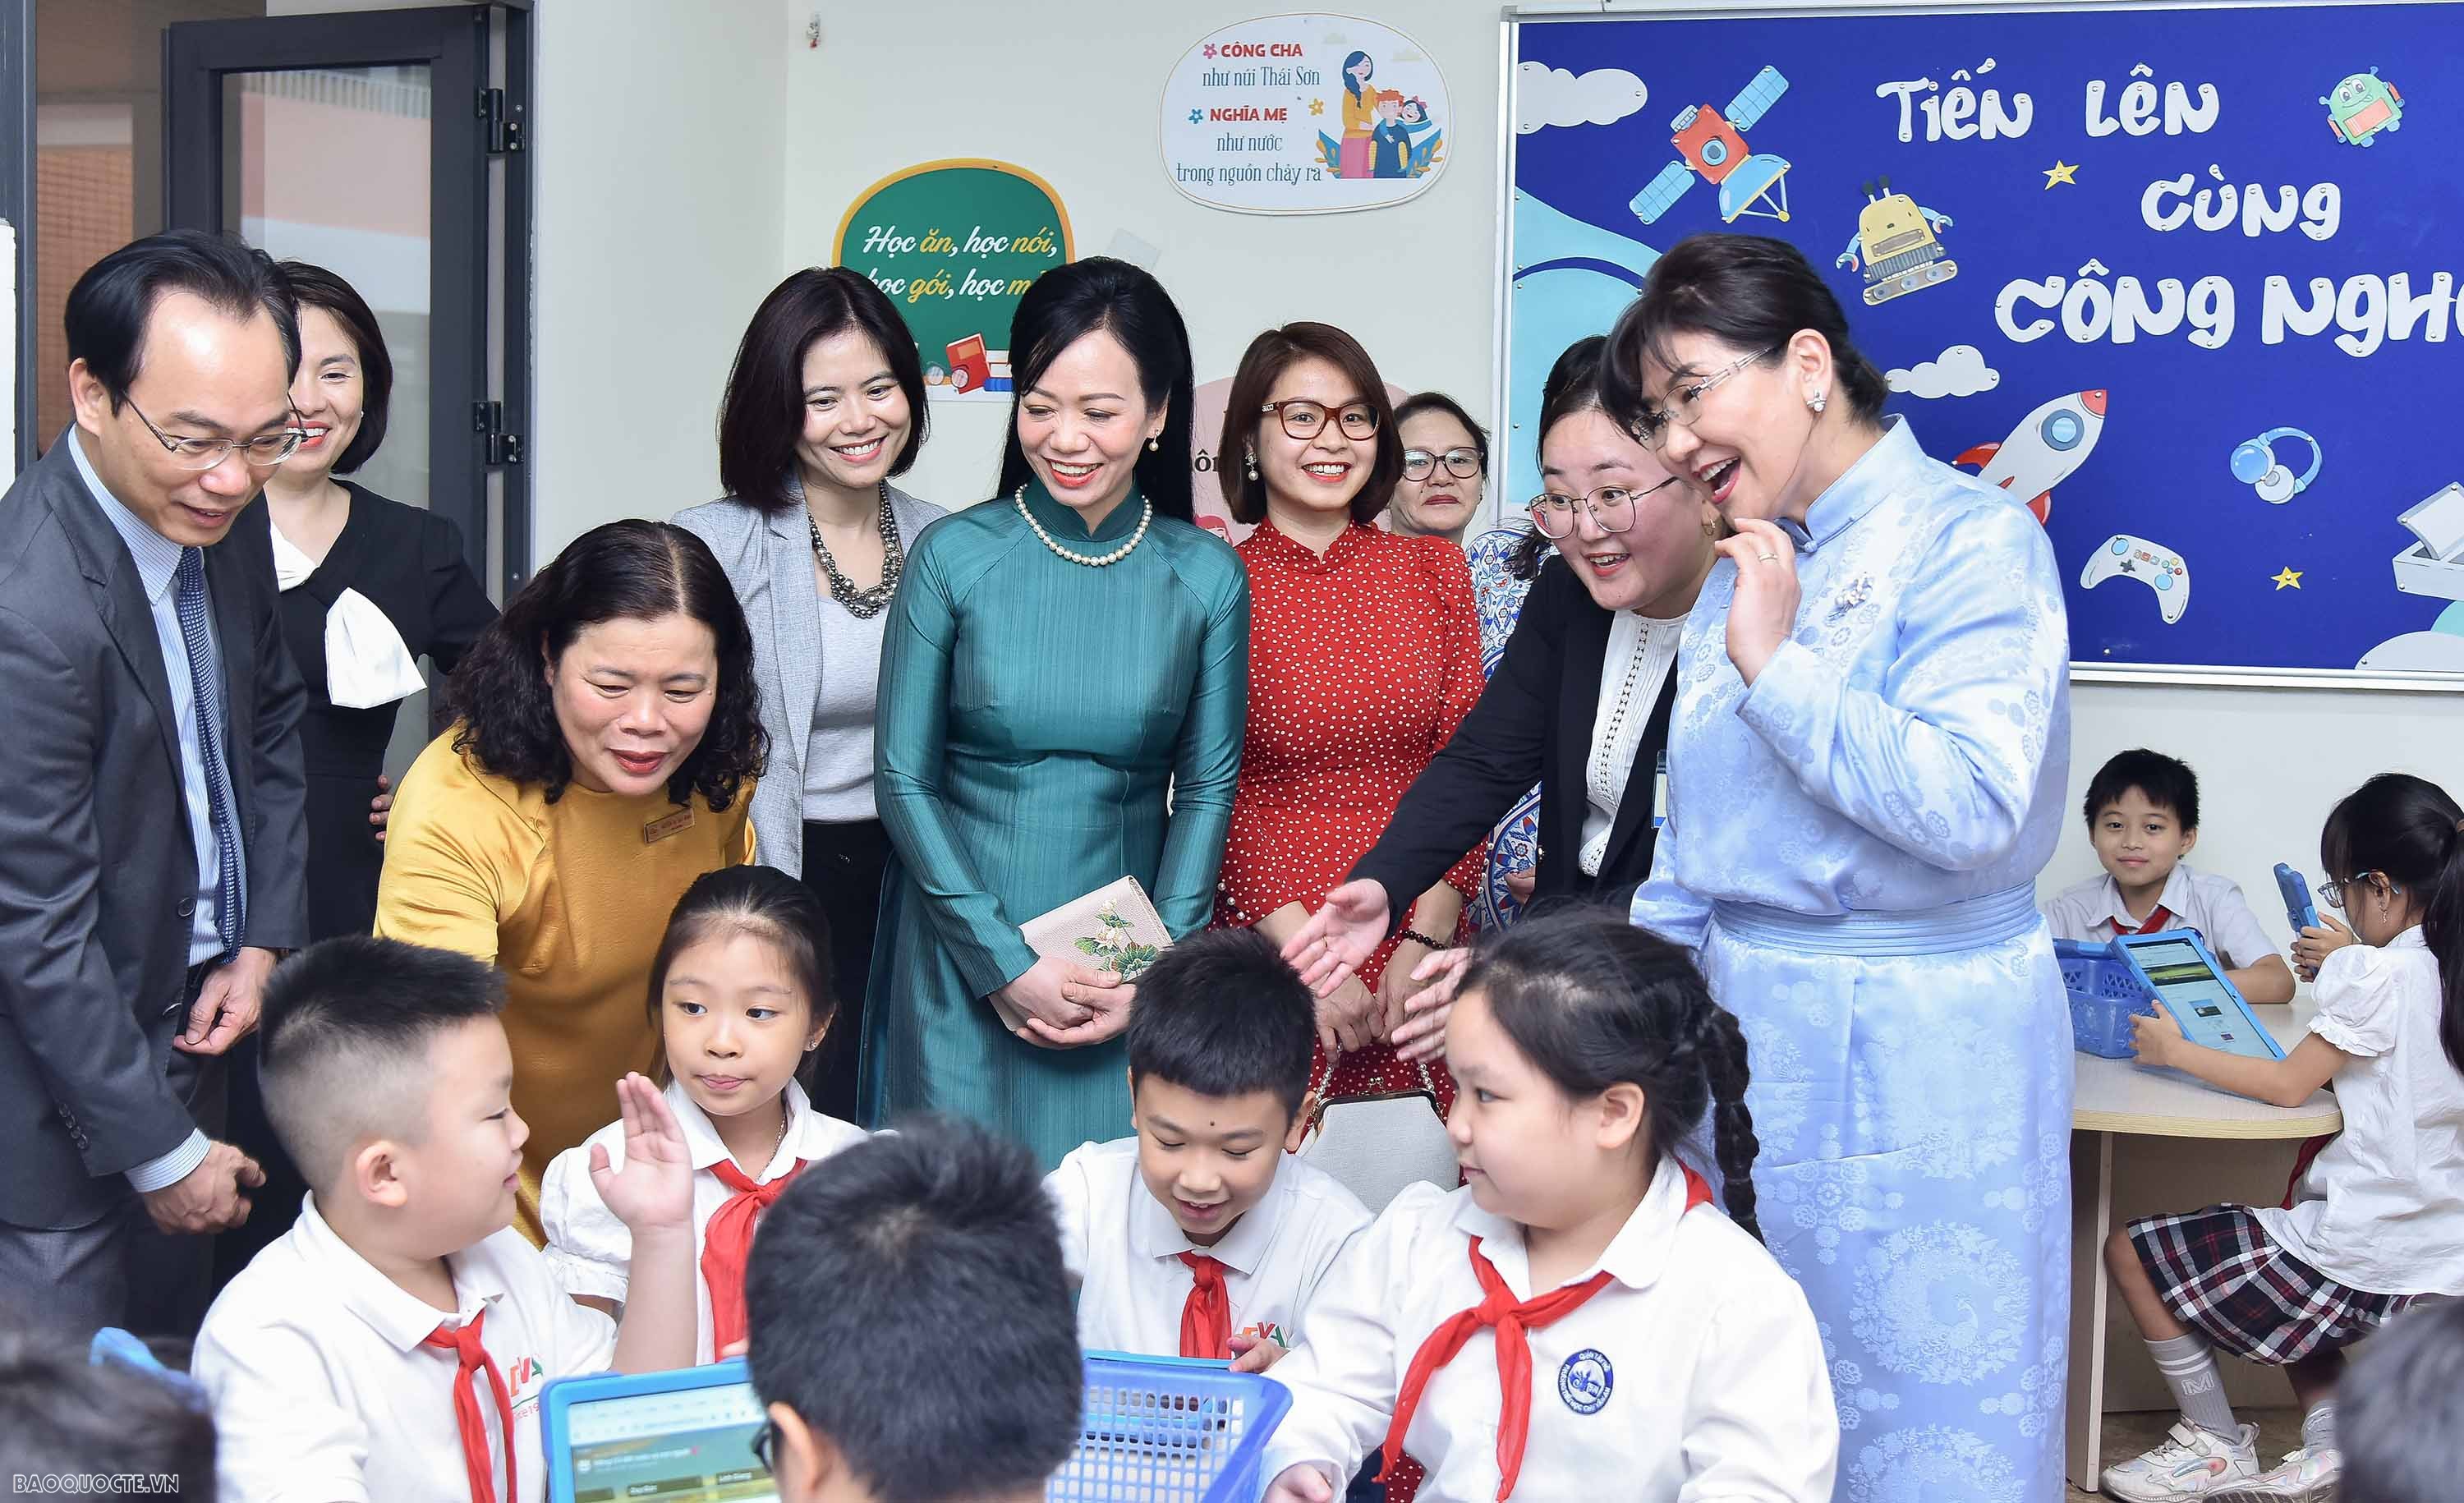 Tất cả các thầy cô giáo ở ngôi trường Tiểu học Chu Văn An luôn cố gắng tạo một môi trường học tập tốt nhất, tạo ra ngôi trường hạnh phúc – nơi mà học sinh được tôn trọng, được yêu thương đúng như mục tiêu giáo dục của nhà trường đề ra.